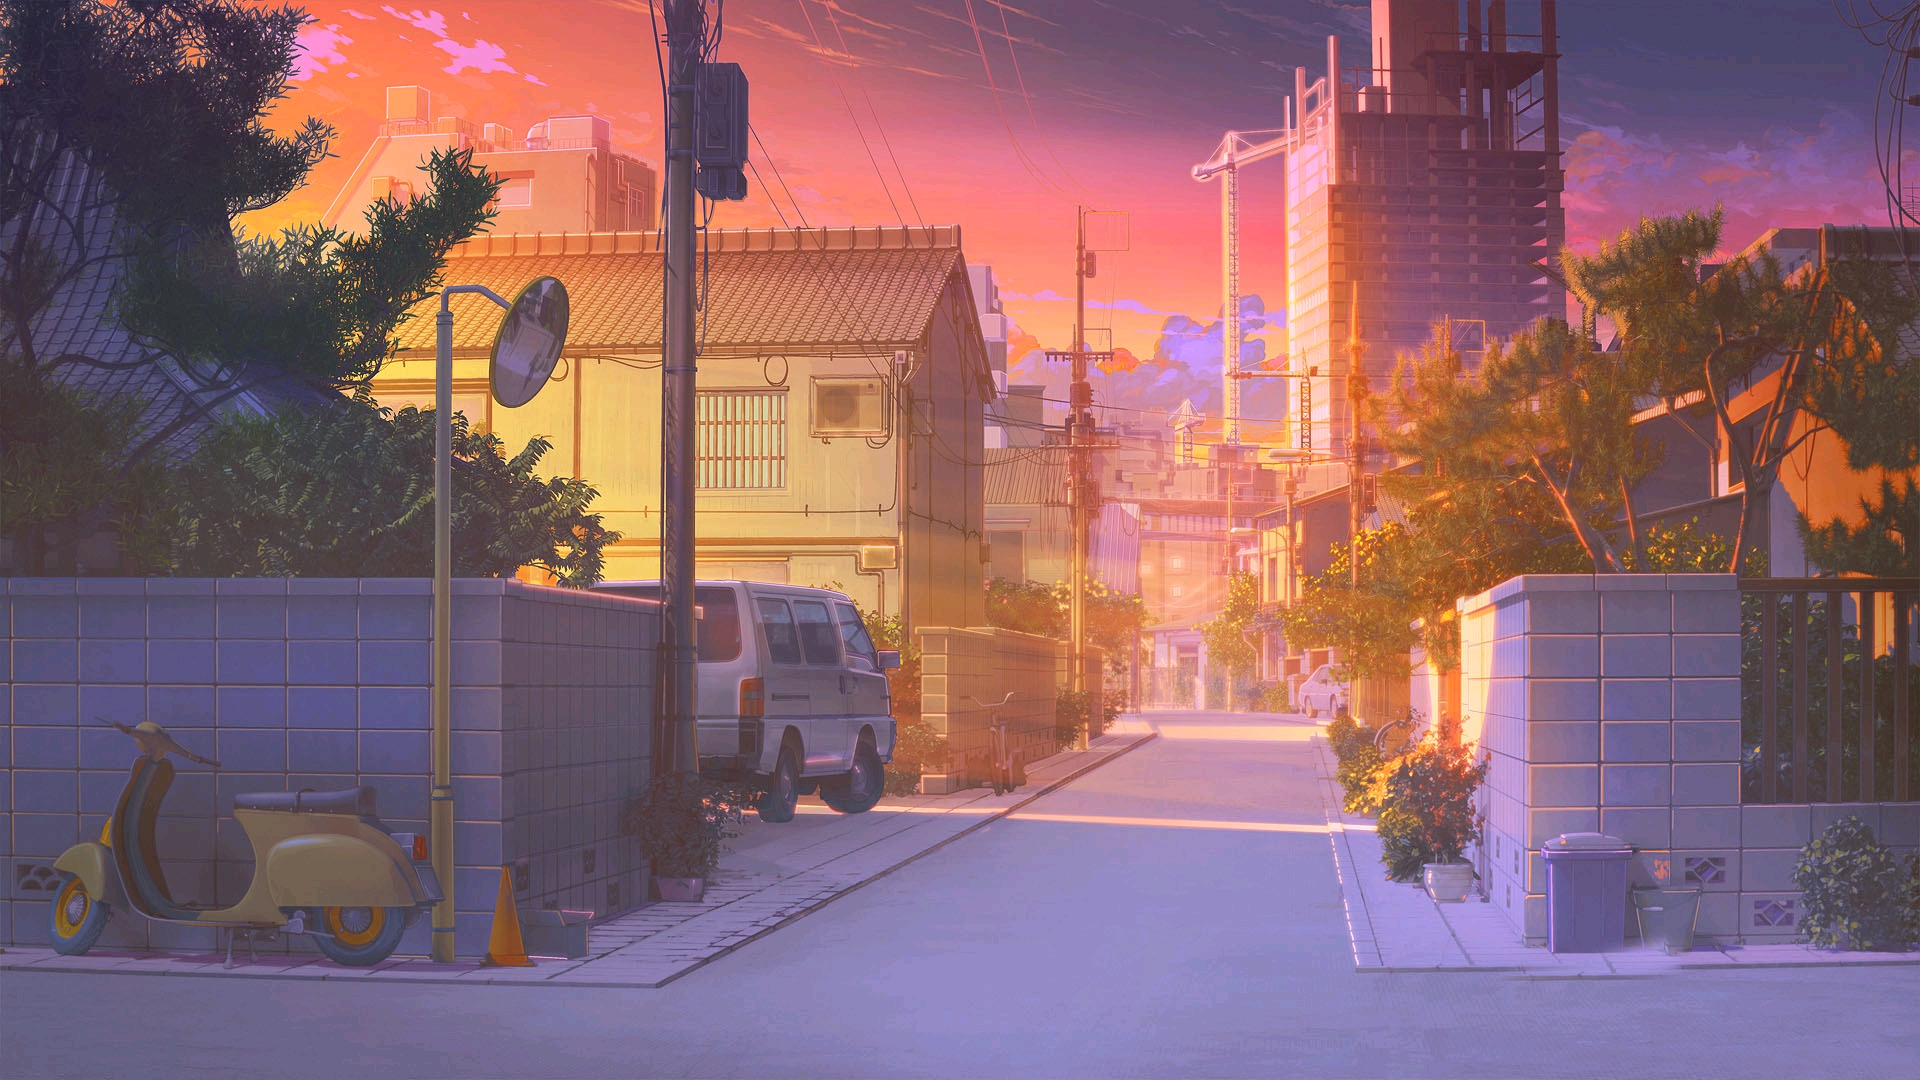 【夕阳黄昏】唯美画风的二次元动漫风景壁纸【电脑壁纸 二】